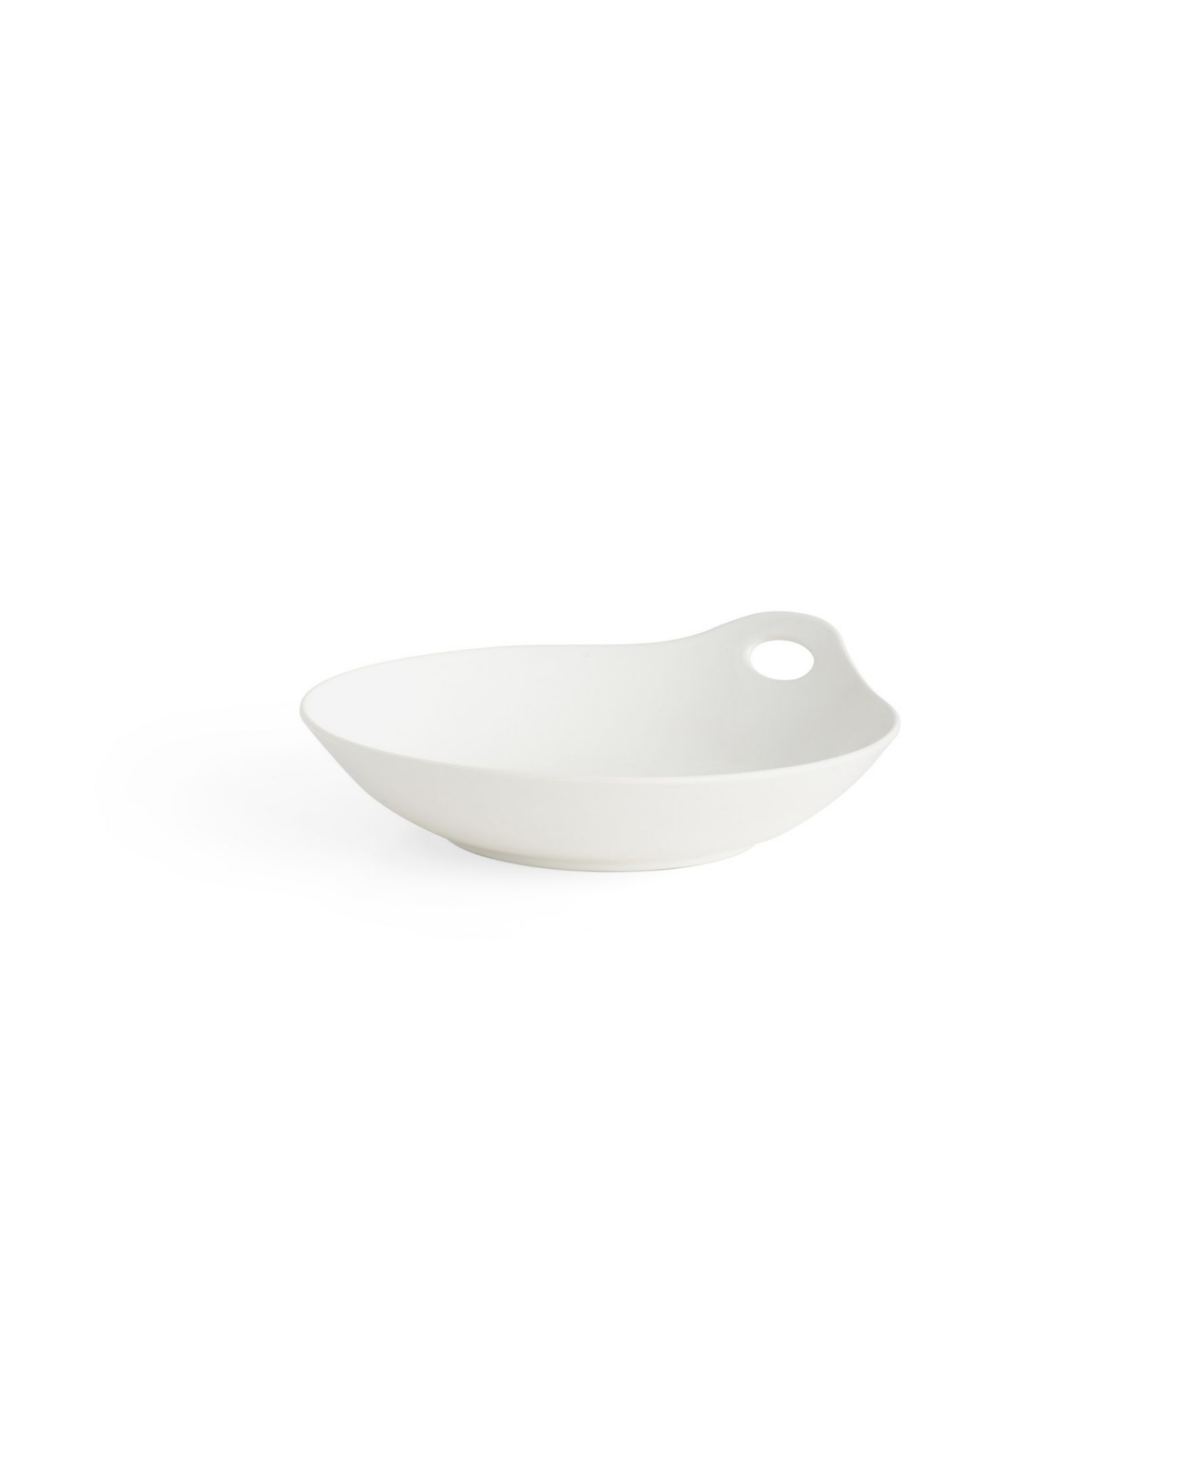 Portables Pasta Bowl - White